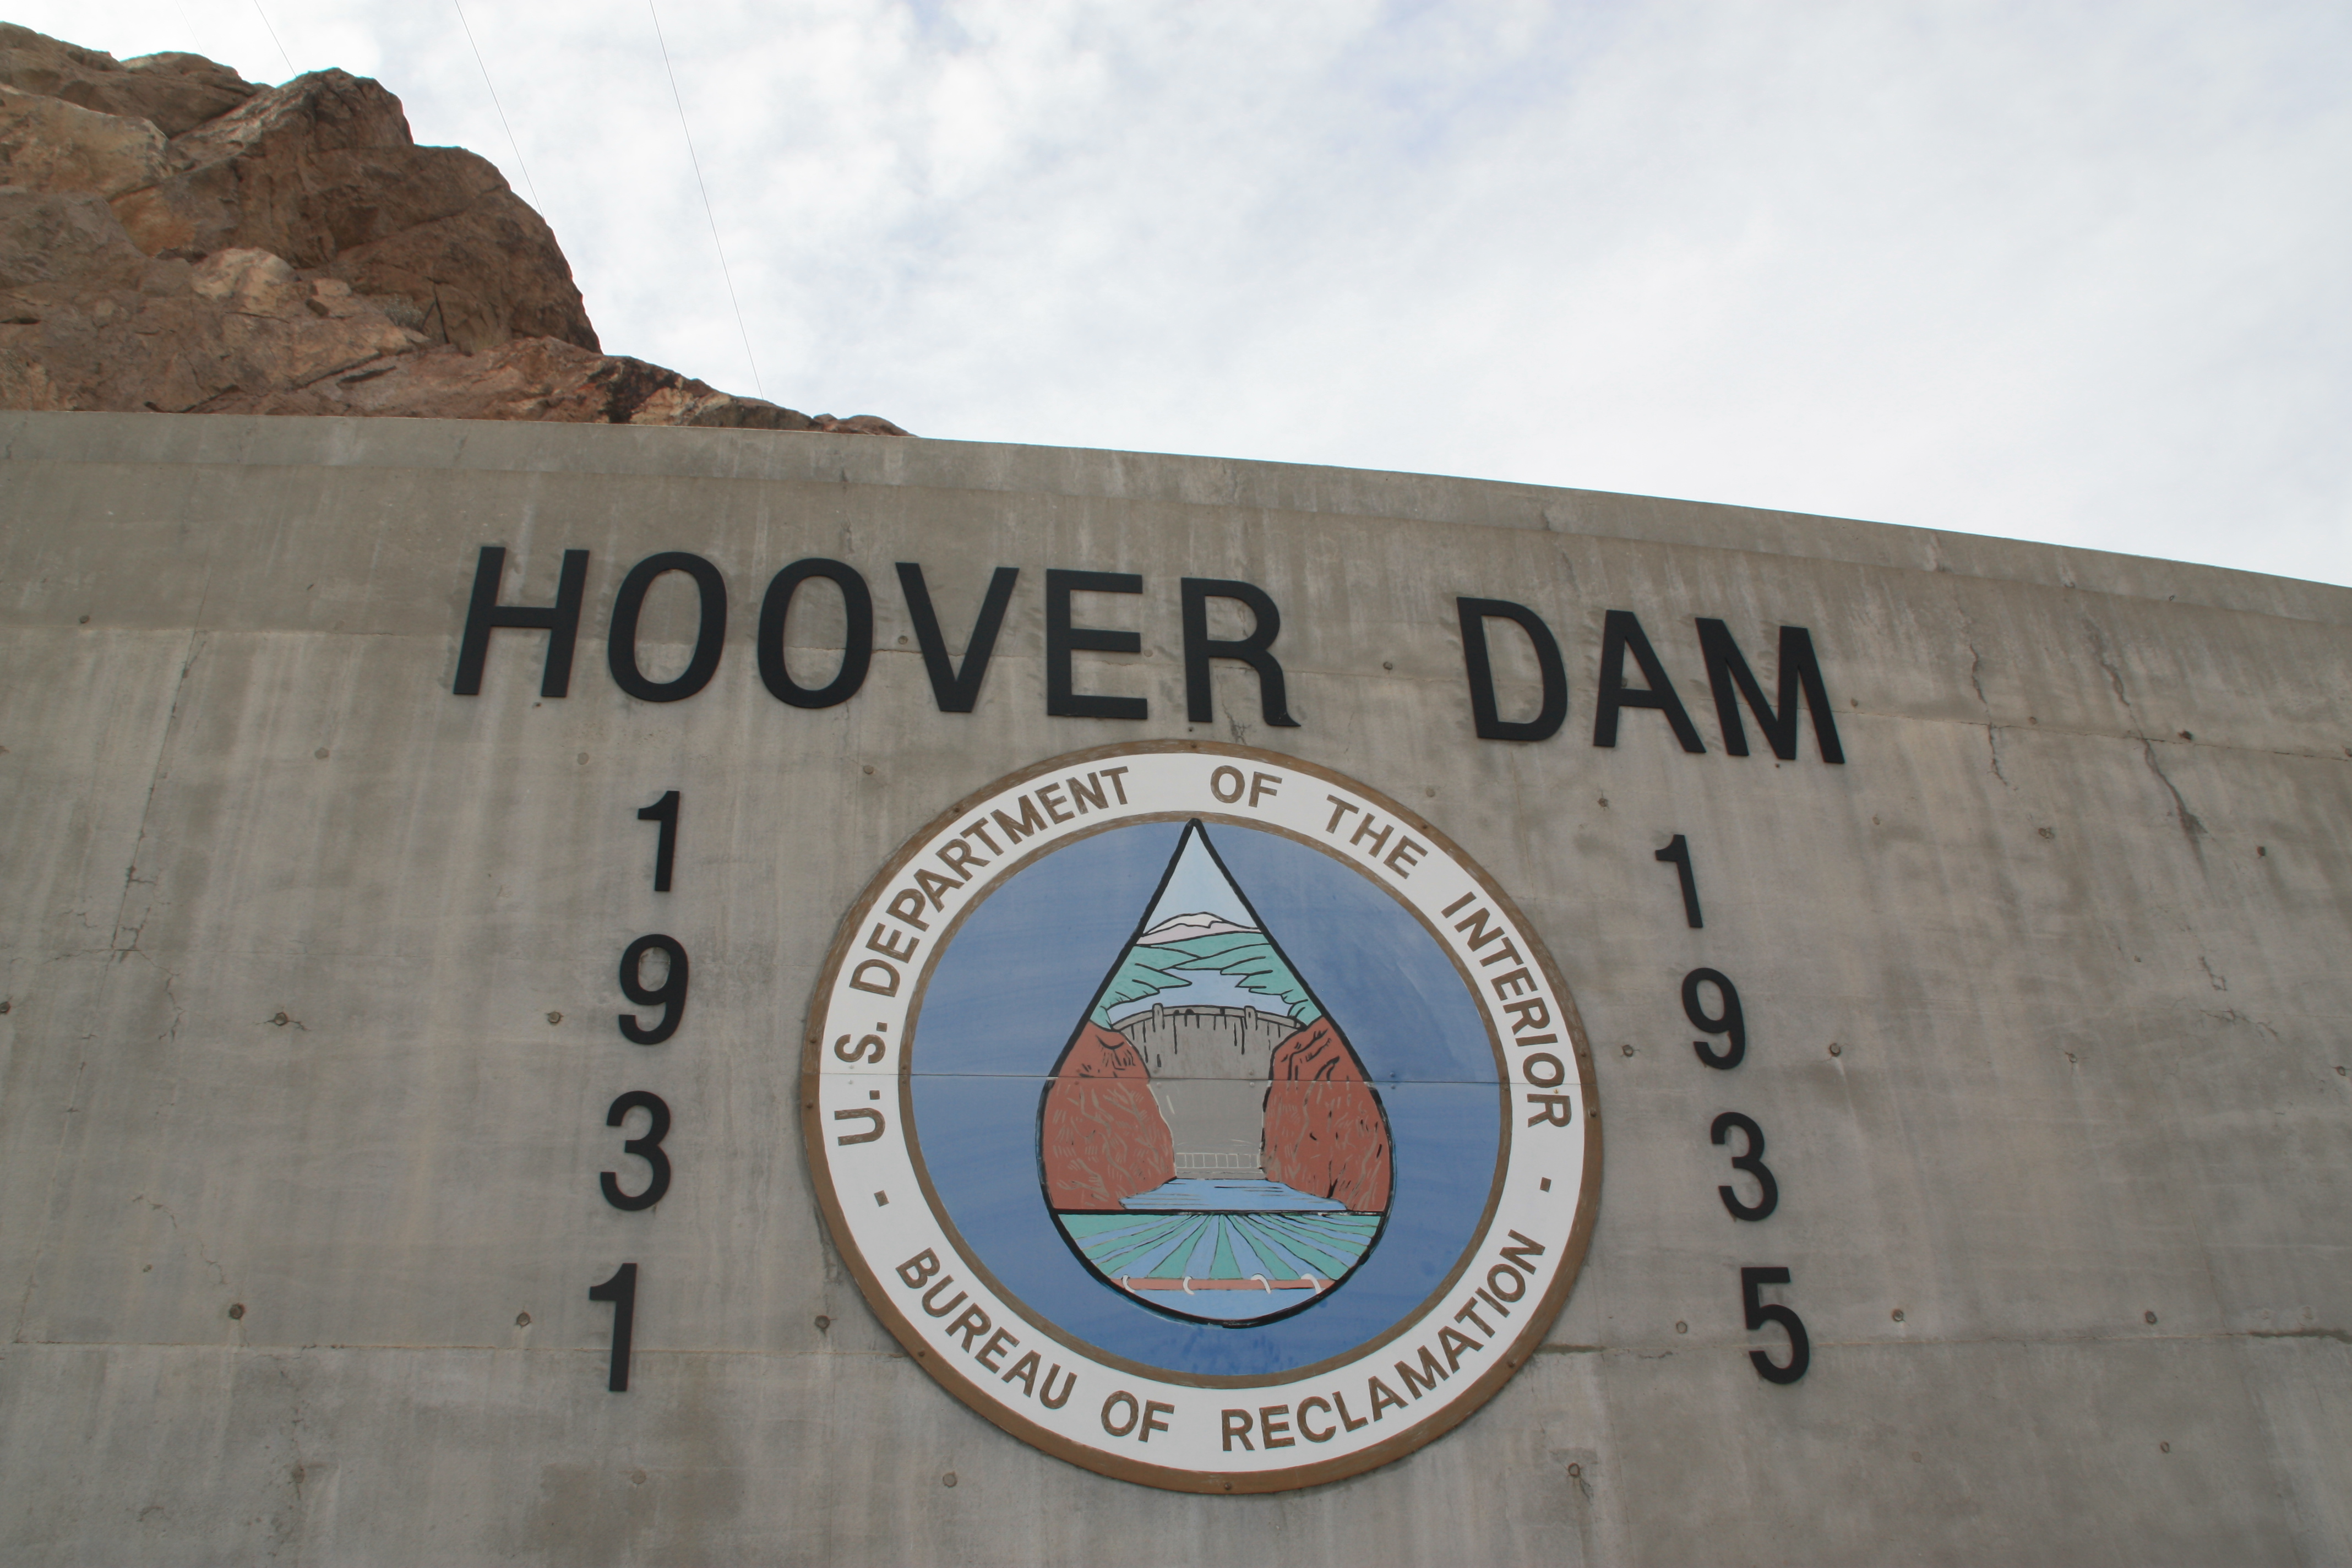 胡佛大坝位于内华达州（拉斯维加斯这边）和亚利桑那州（大峡谷那边）之间的交界处。1936年就建成使用了